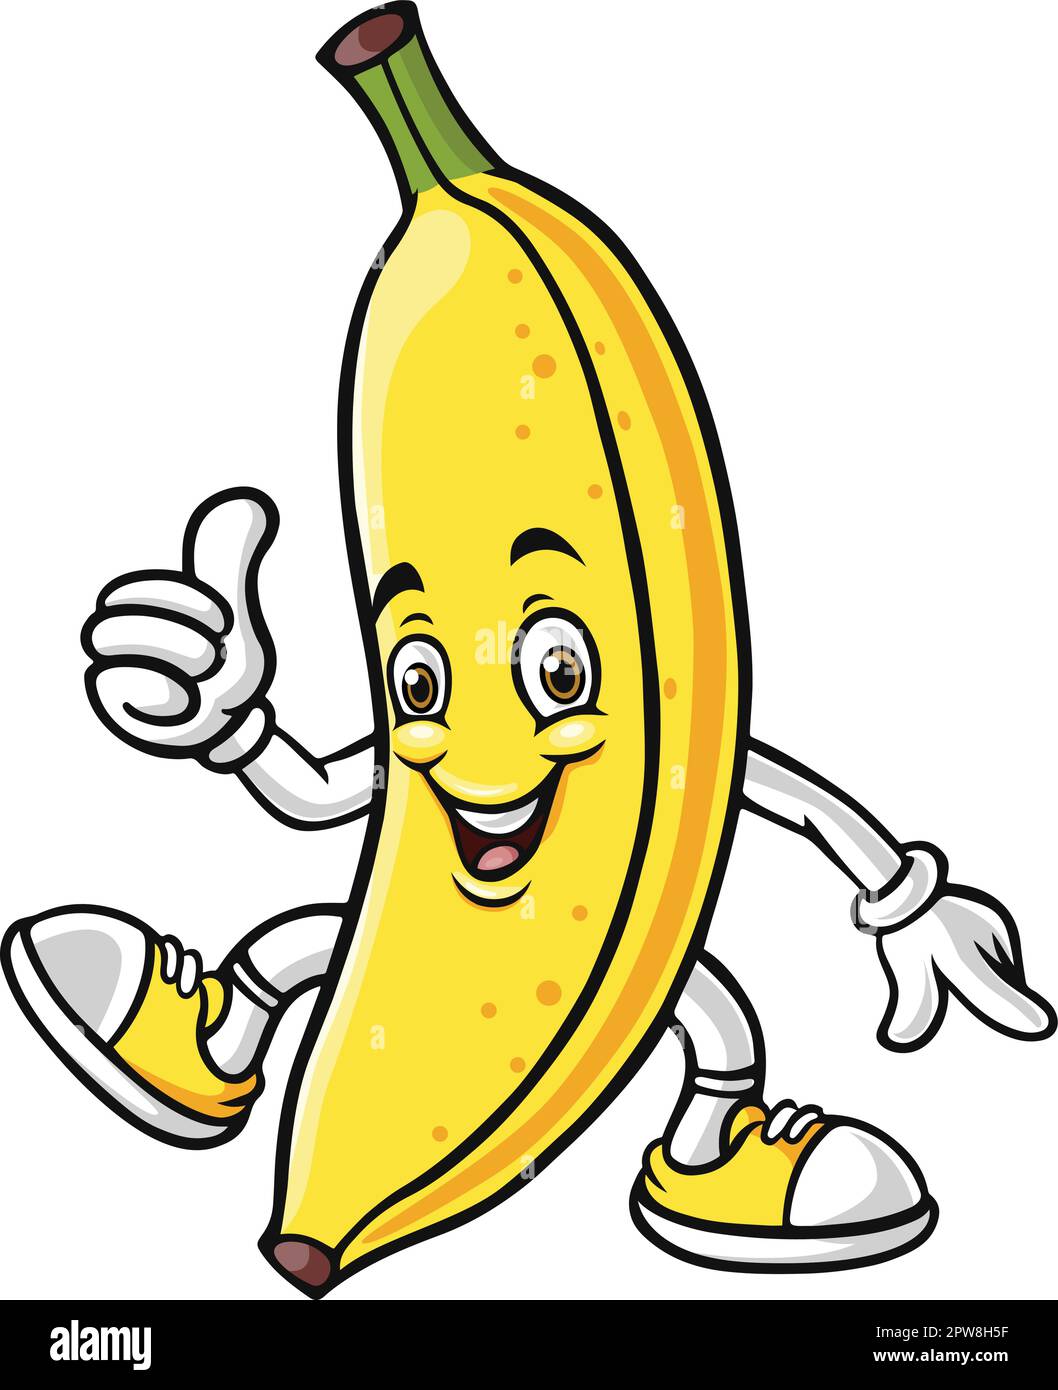 Cartoon banana character giving a thumbs up Stock Vector Image & Art ...